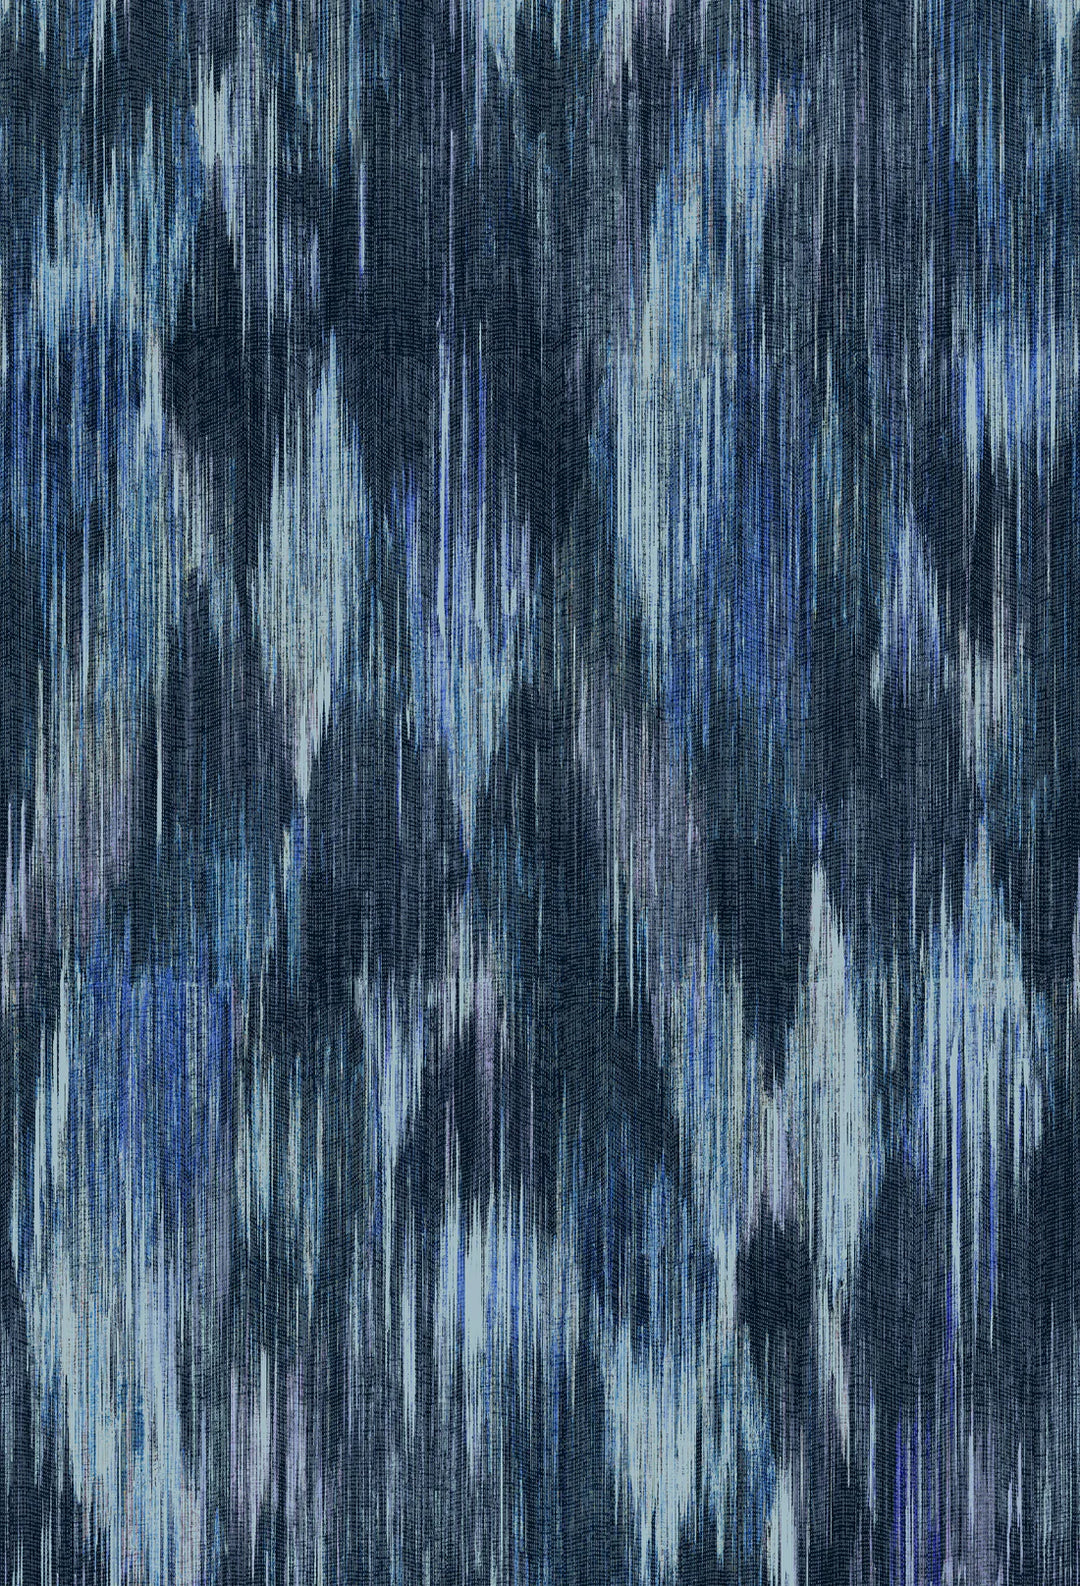 Victoria-Sanders-Spectre-Ikat-geometric-Wallpaper-Marine-blue-tones-aqua-navy-indigo